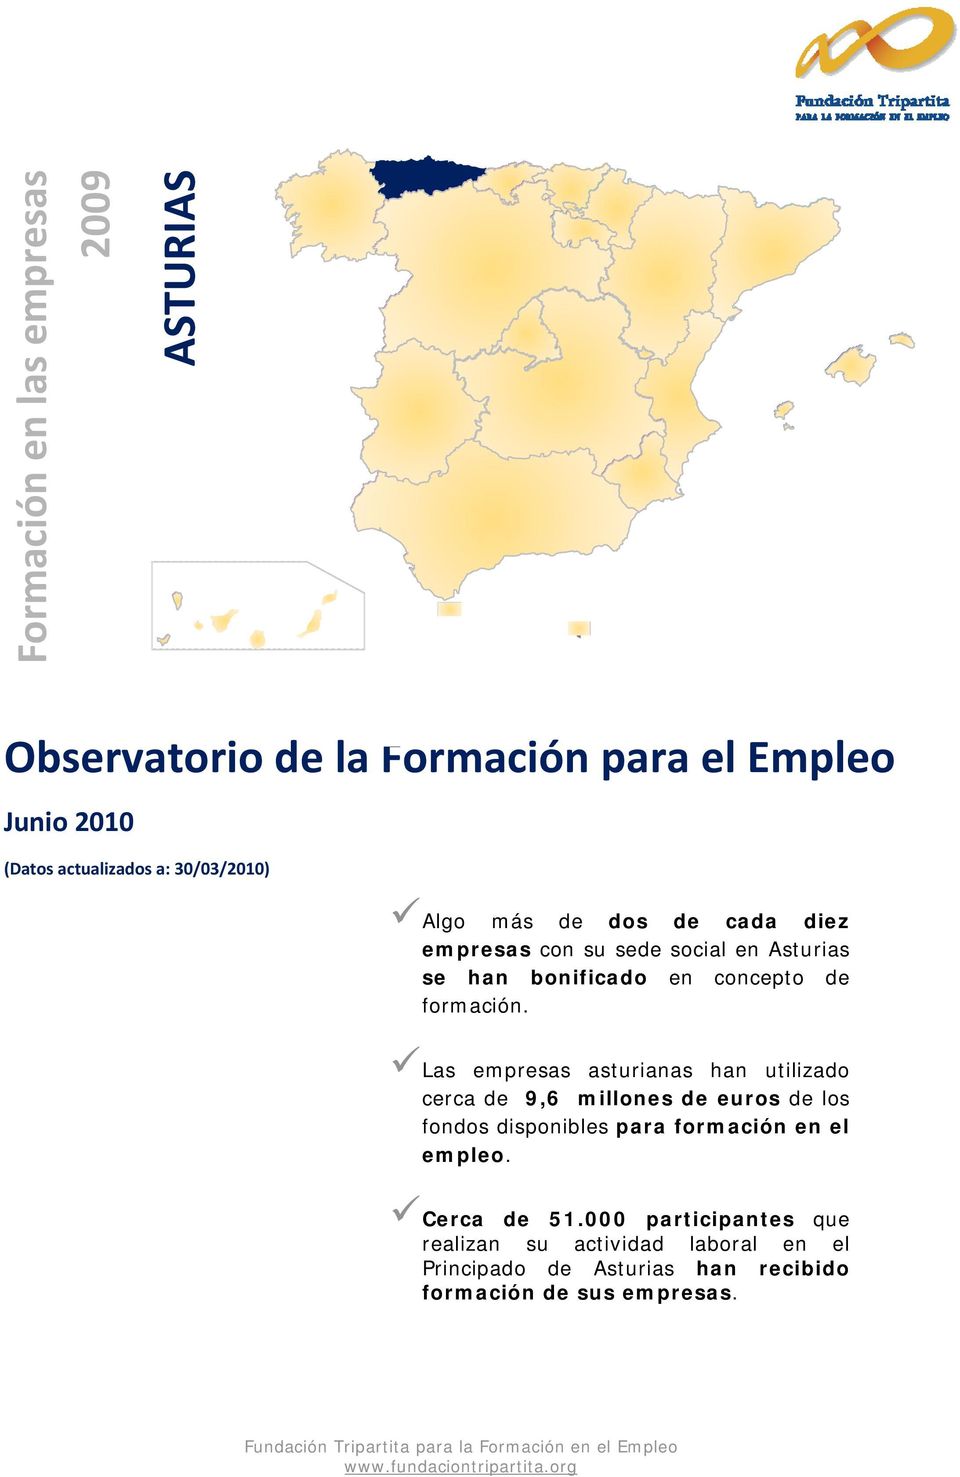 Las empresas asturianas han utilizado cerca de 9,6 millones de euros de los fondos disponibles para formación en el empleo.